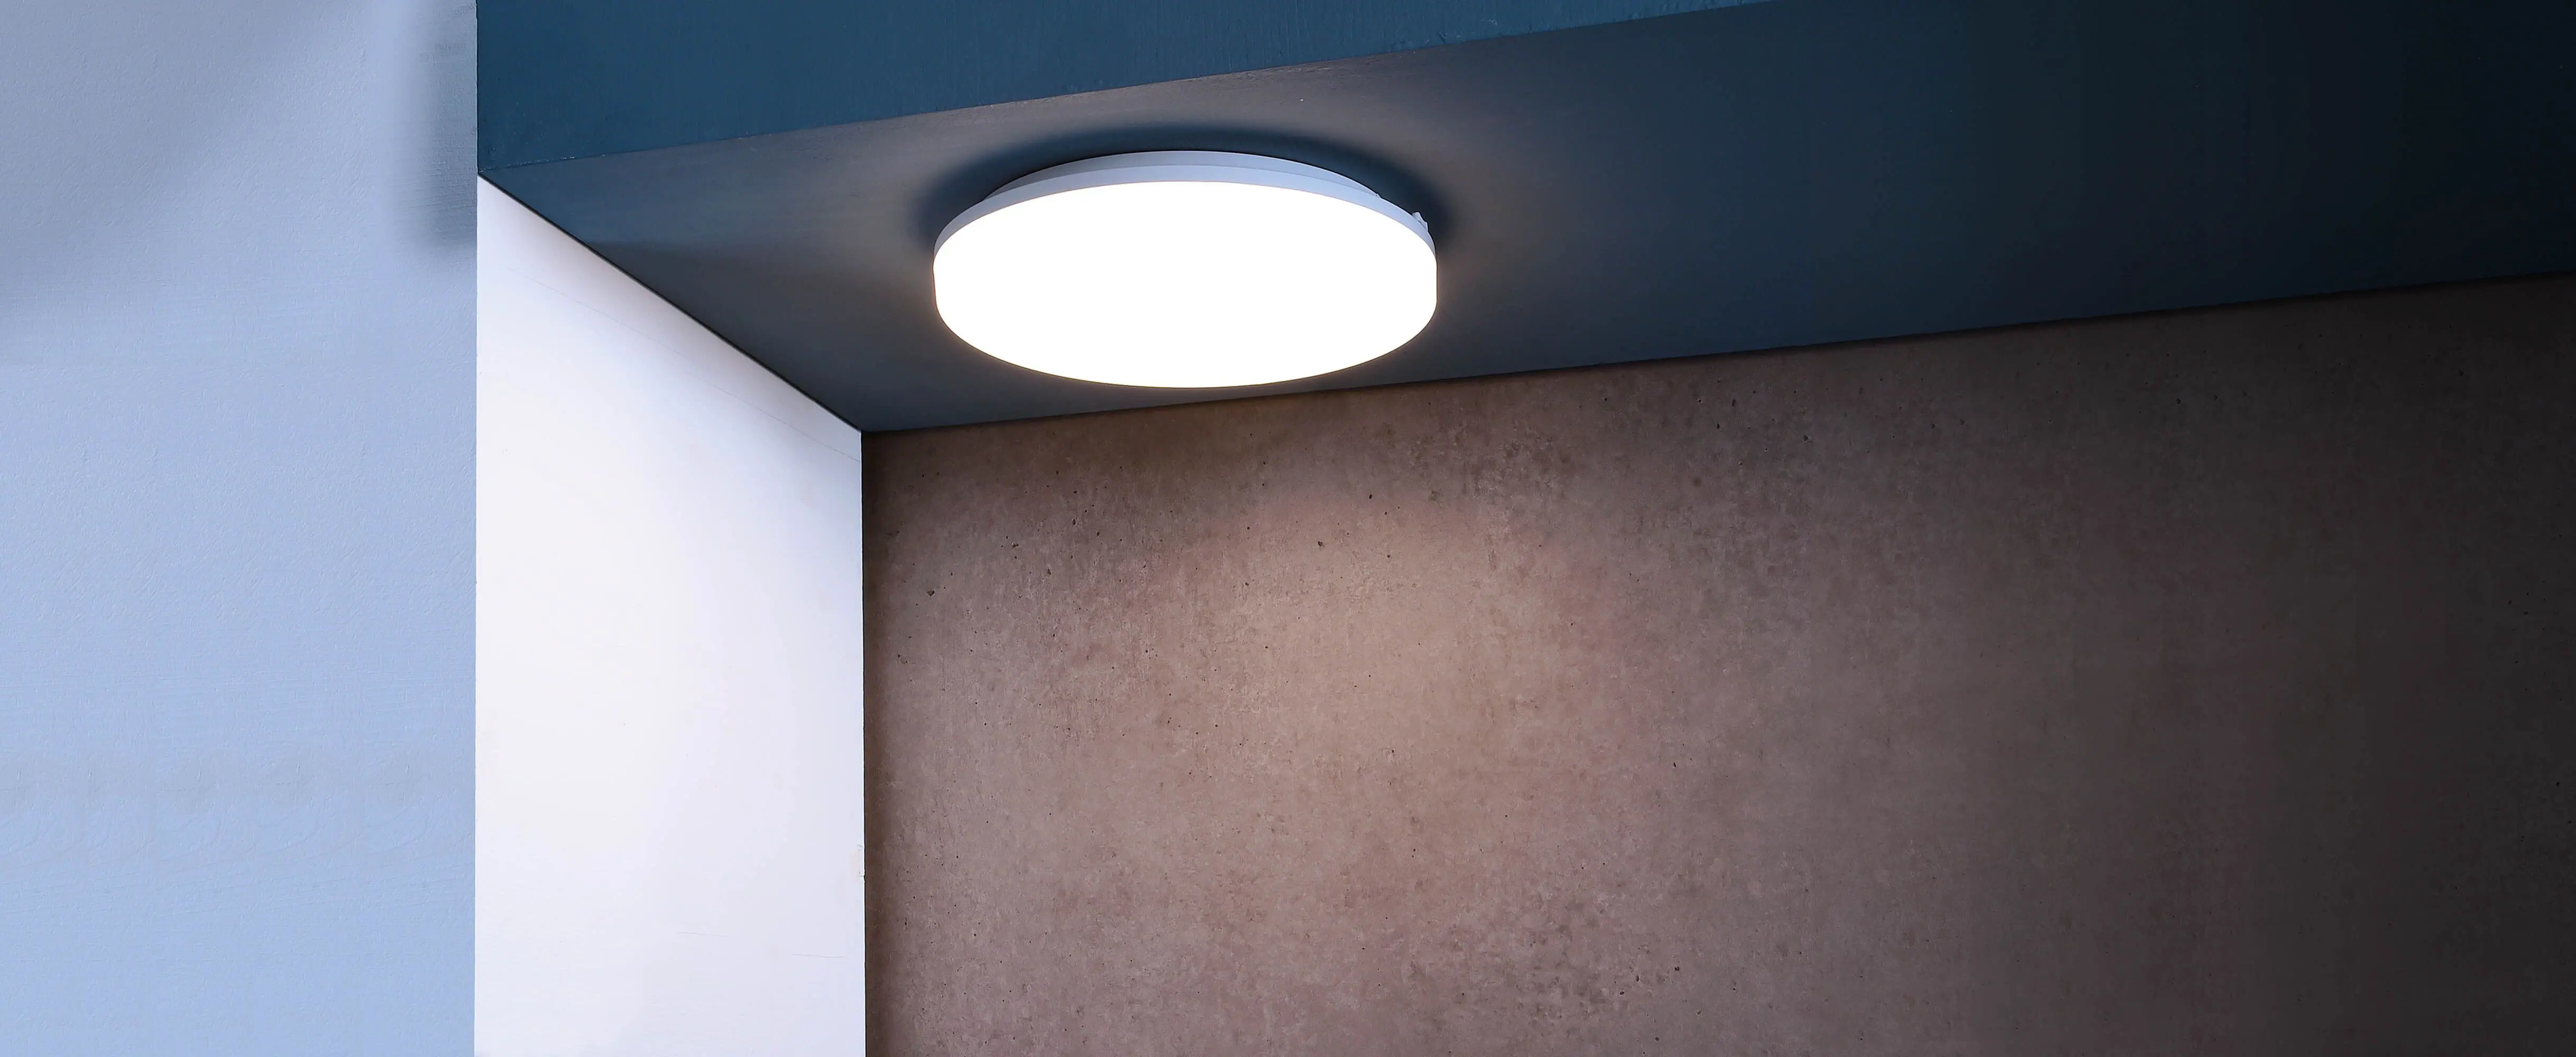 LED-Deckenlampe Altais Deluxe in weiß Ø 33cm